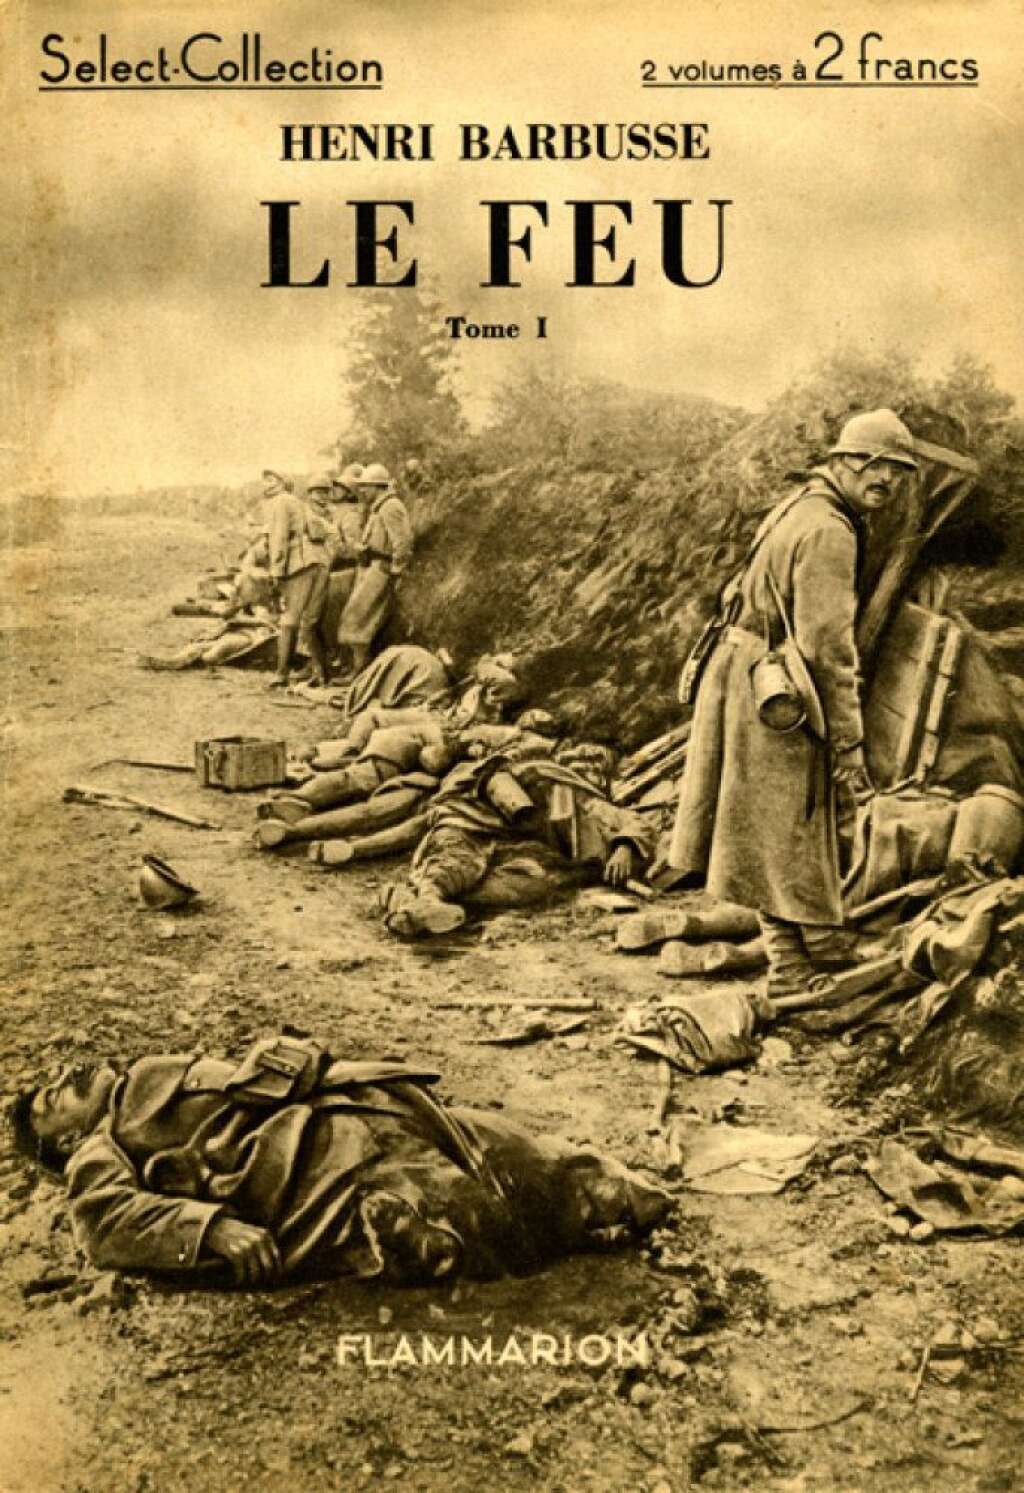 "Le Feu" d'Henri Barbusse - Roman feuilleton publié dès août 1916, une des toutes premières oeuvres littéraires concernant la Grande Guerre, le récit de Barbusse, engagé volontaire, est un des témoignages les plus poignants de 14-18.